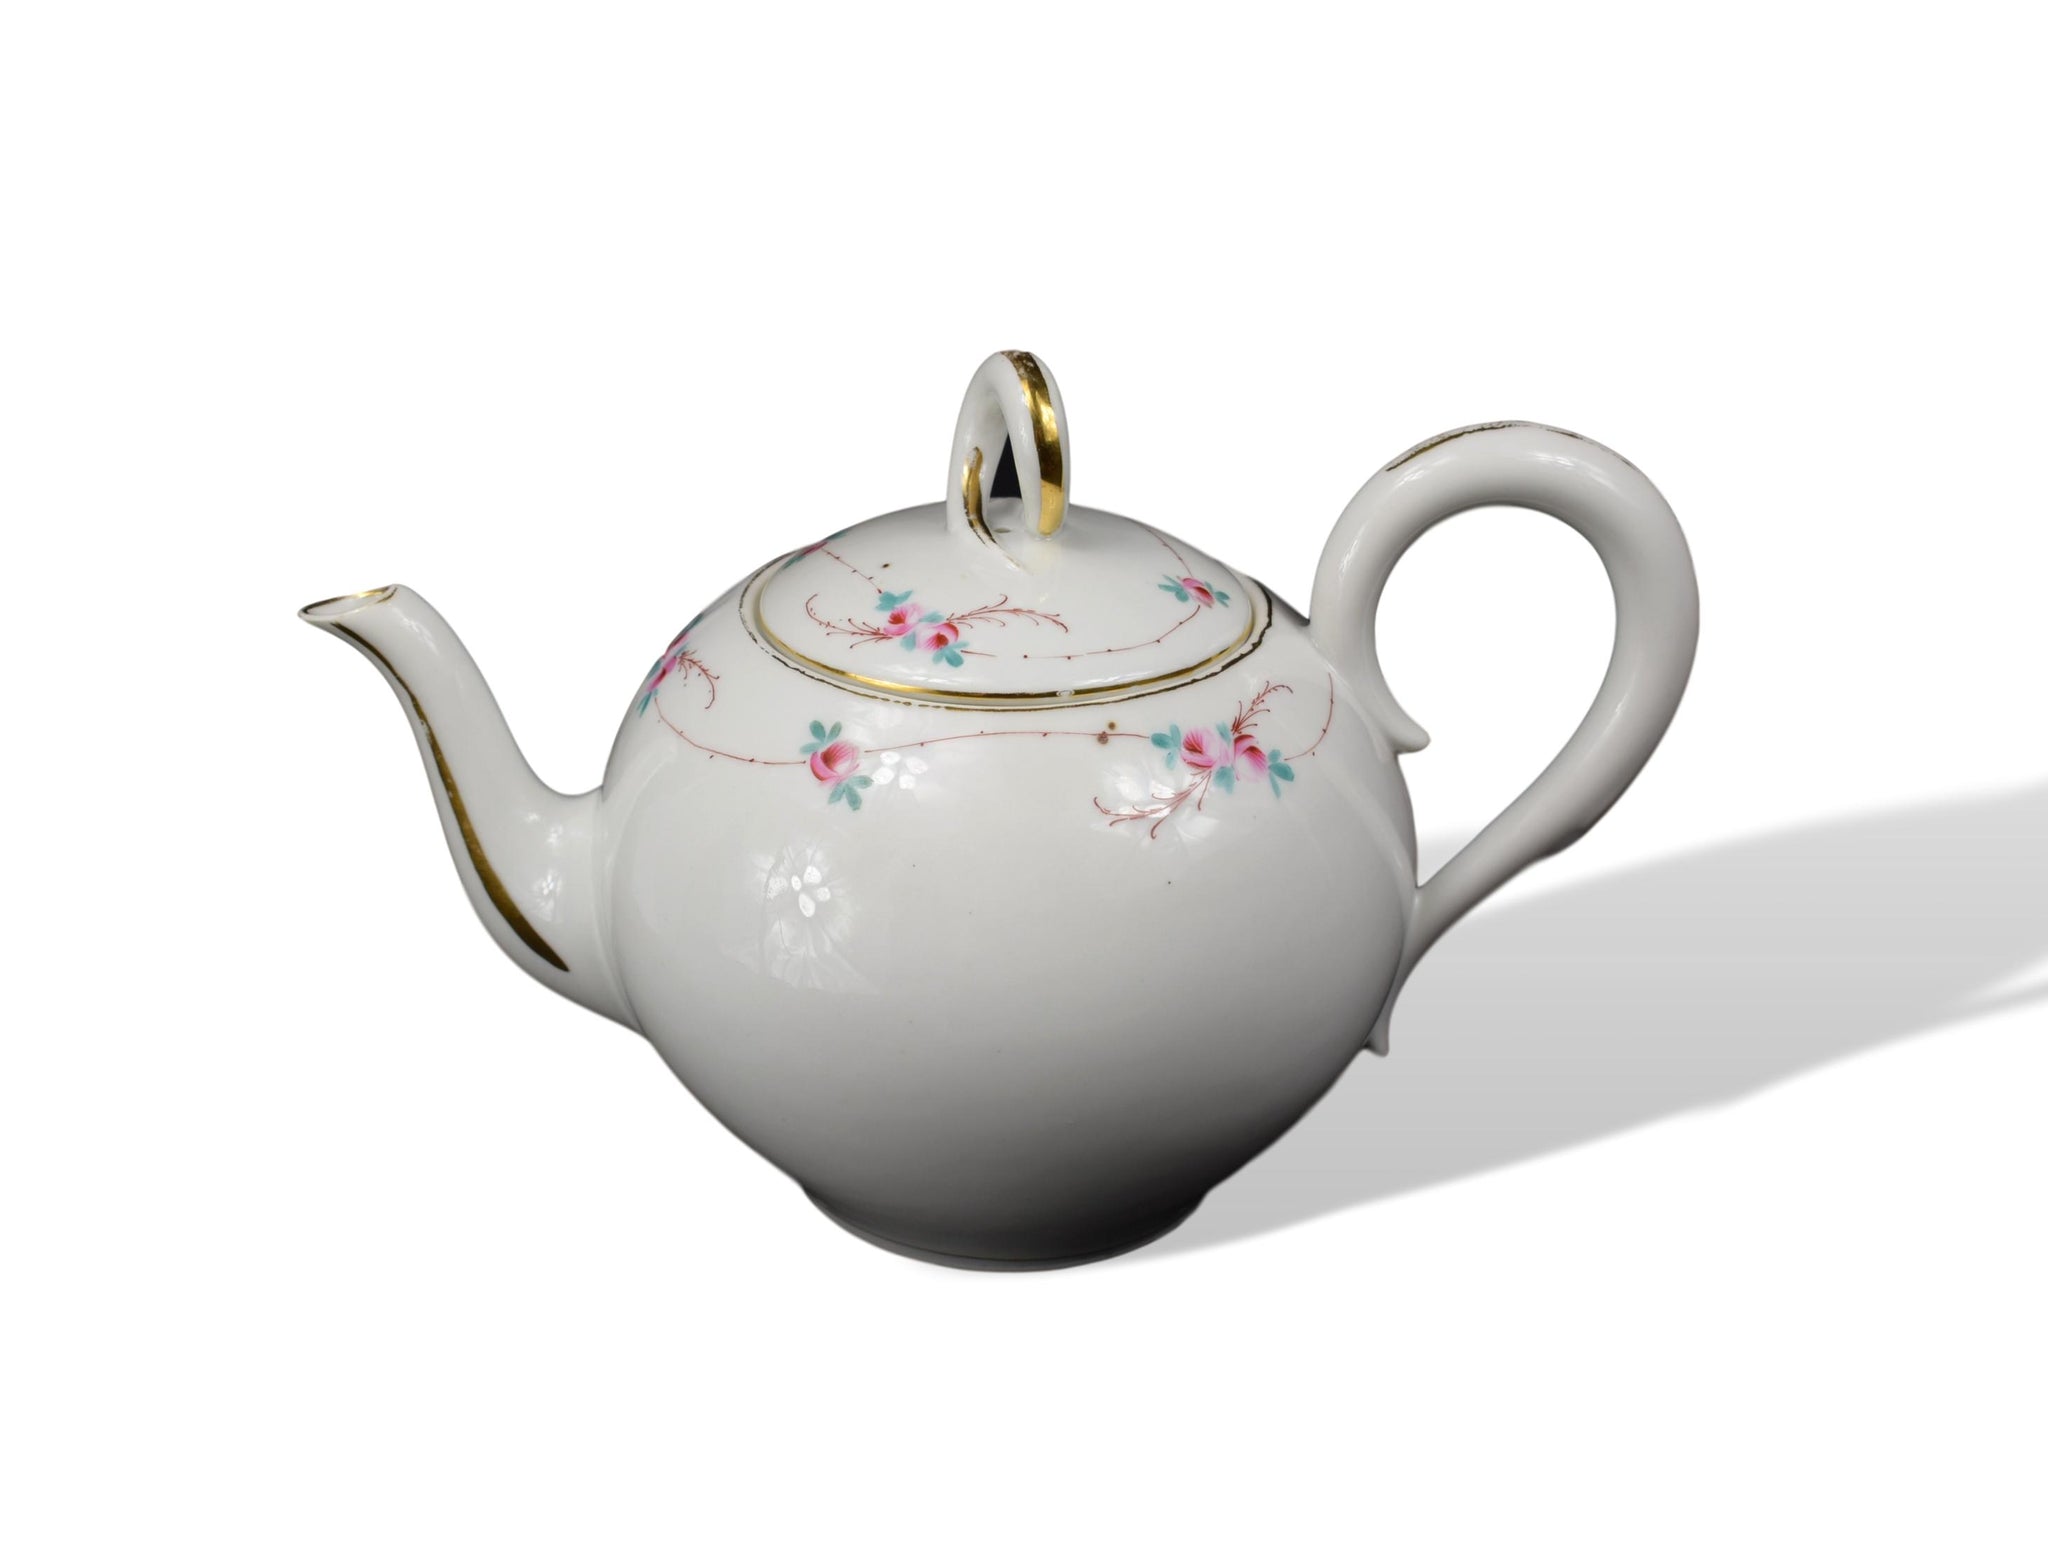 19th.C Paris Porcelain Tea Pot - Charmantiques China tea pot French petit dejeuner teatime handprinted porcelain